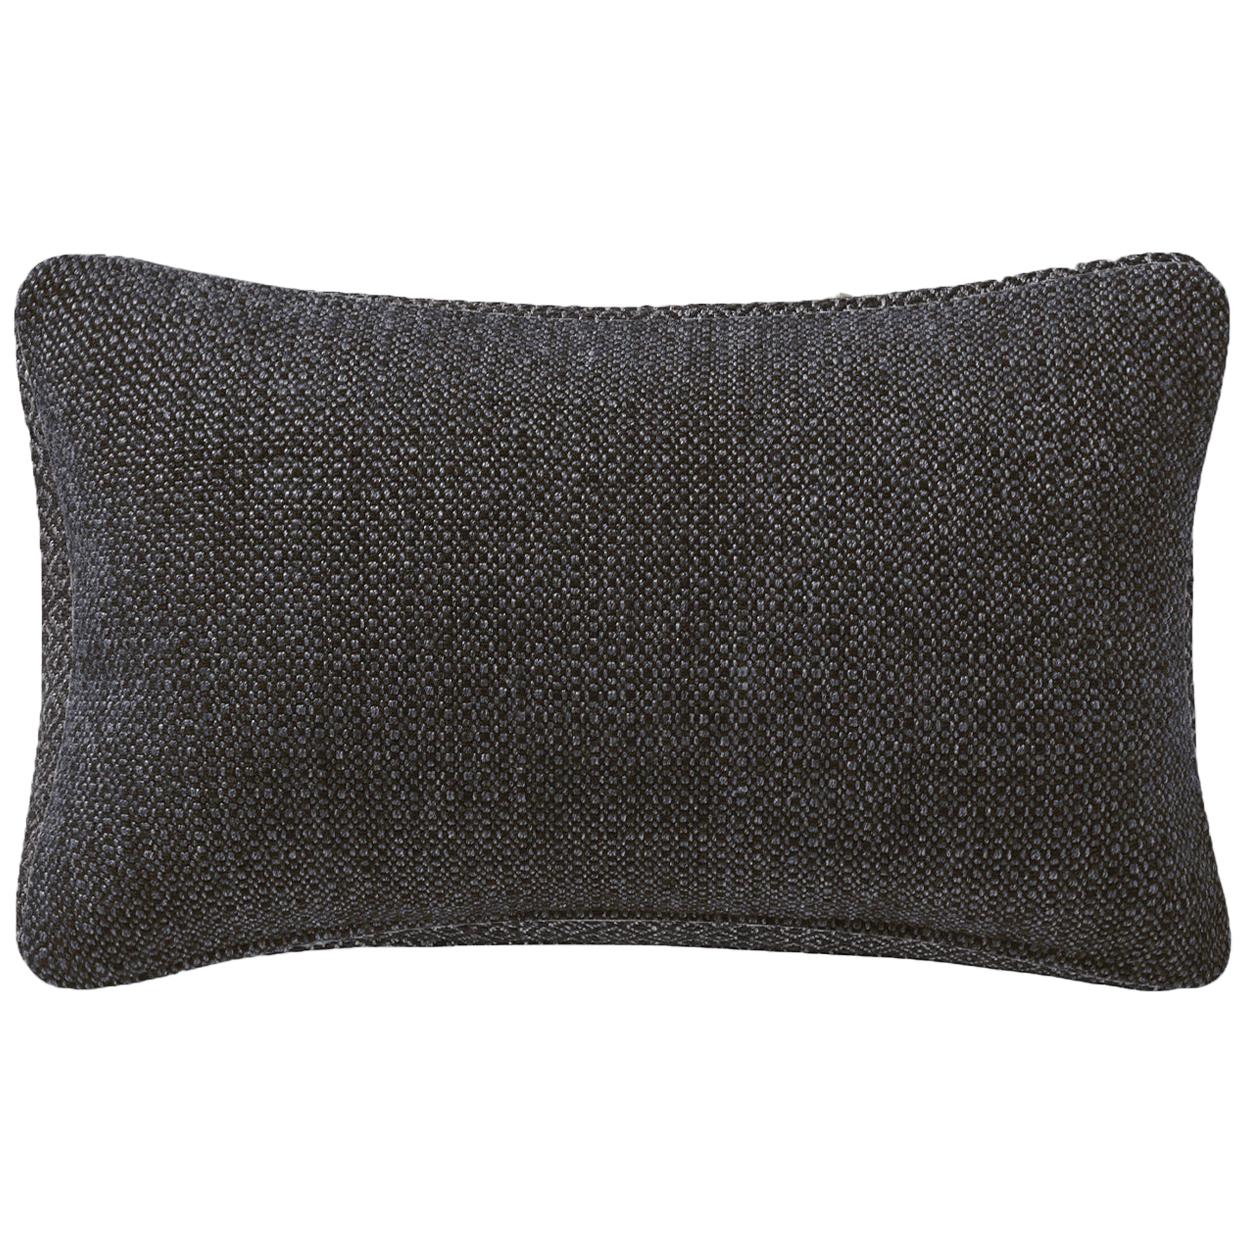 Ben Soleimani Basketweave Pillow Cover - Espresso 13"x21" For Sale